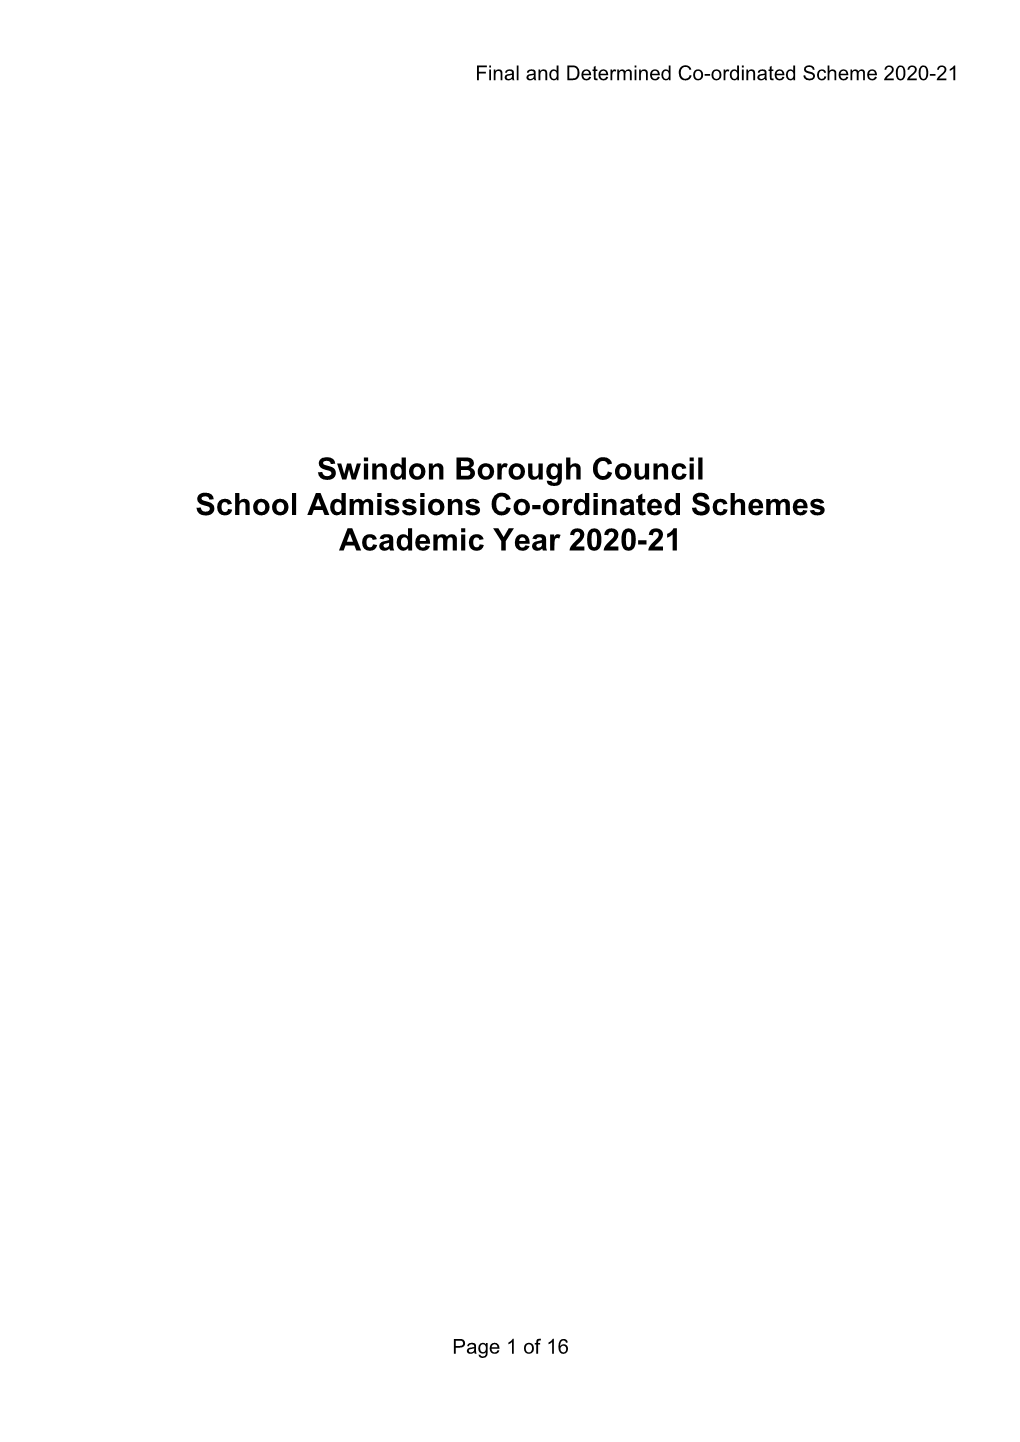 School Admissions Coordinated Scheme 2020-21